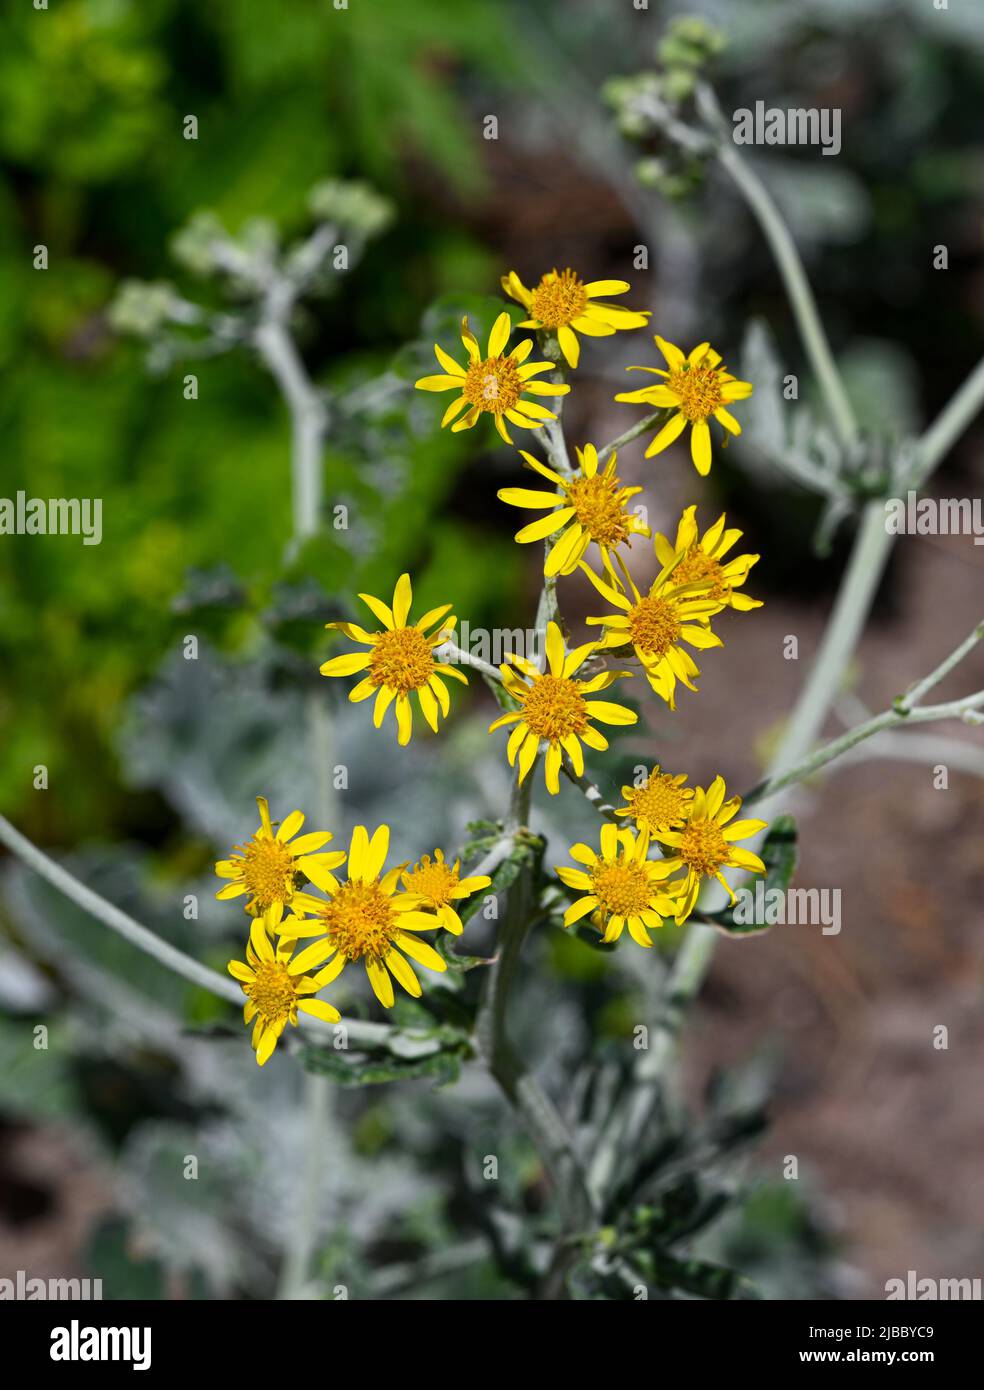 El ragwort de plata (jacobarea maritima o senecio cineraria) es una hierba perenne nativa de la región mediterránea Foto de stock